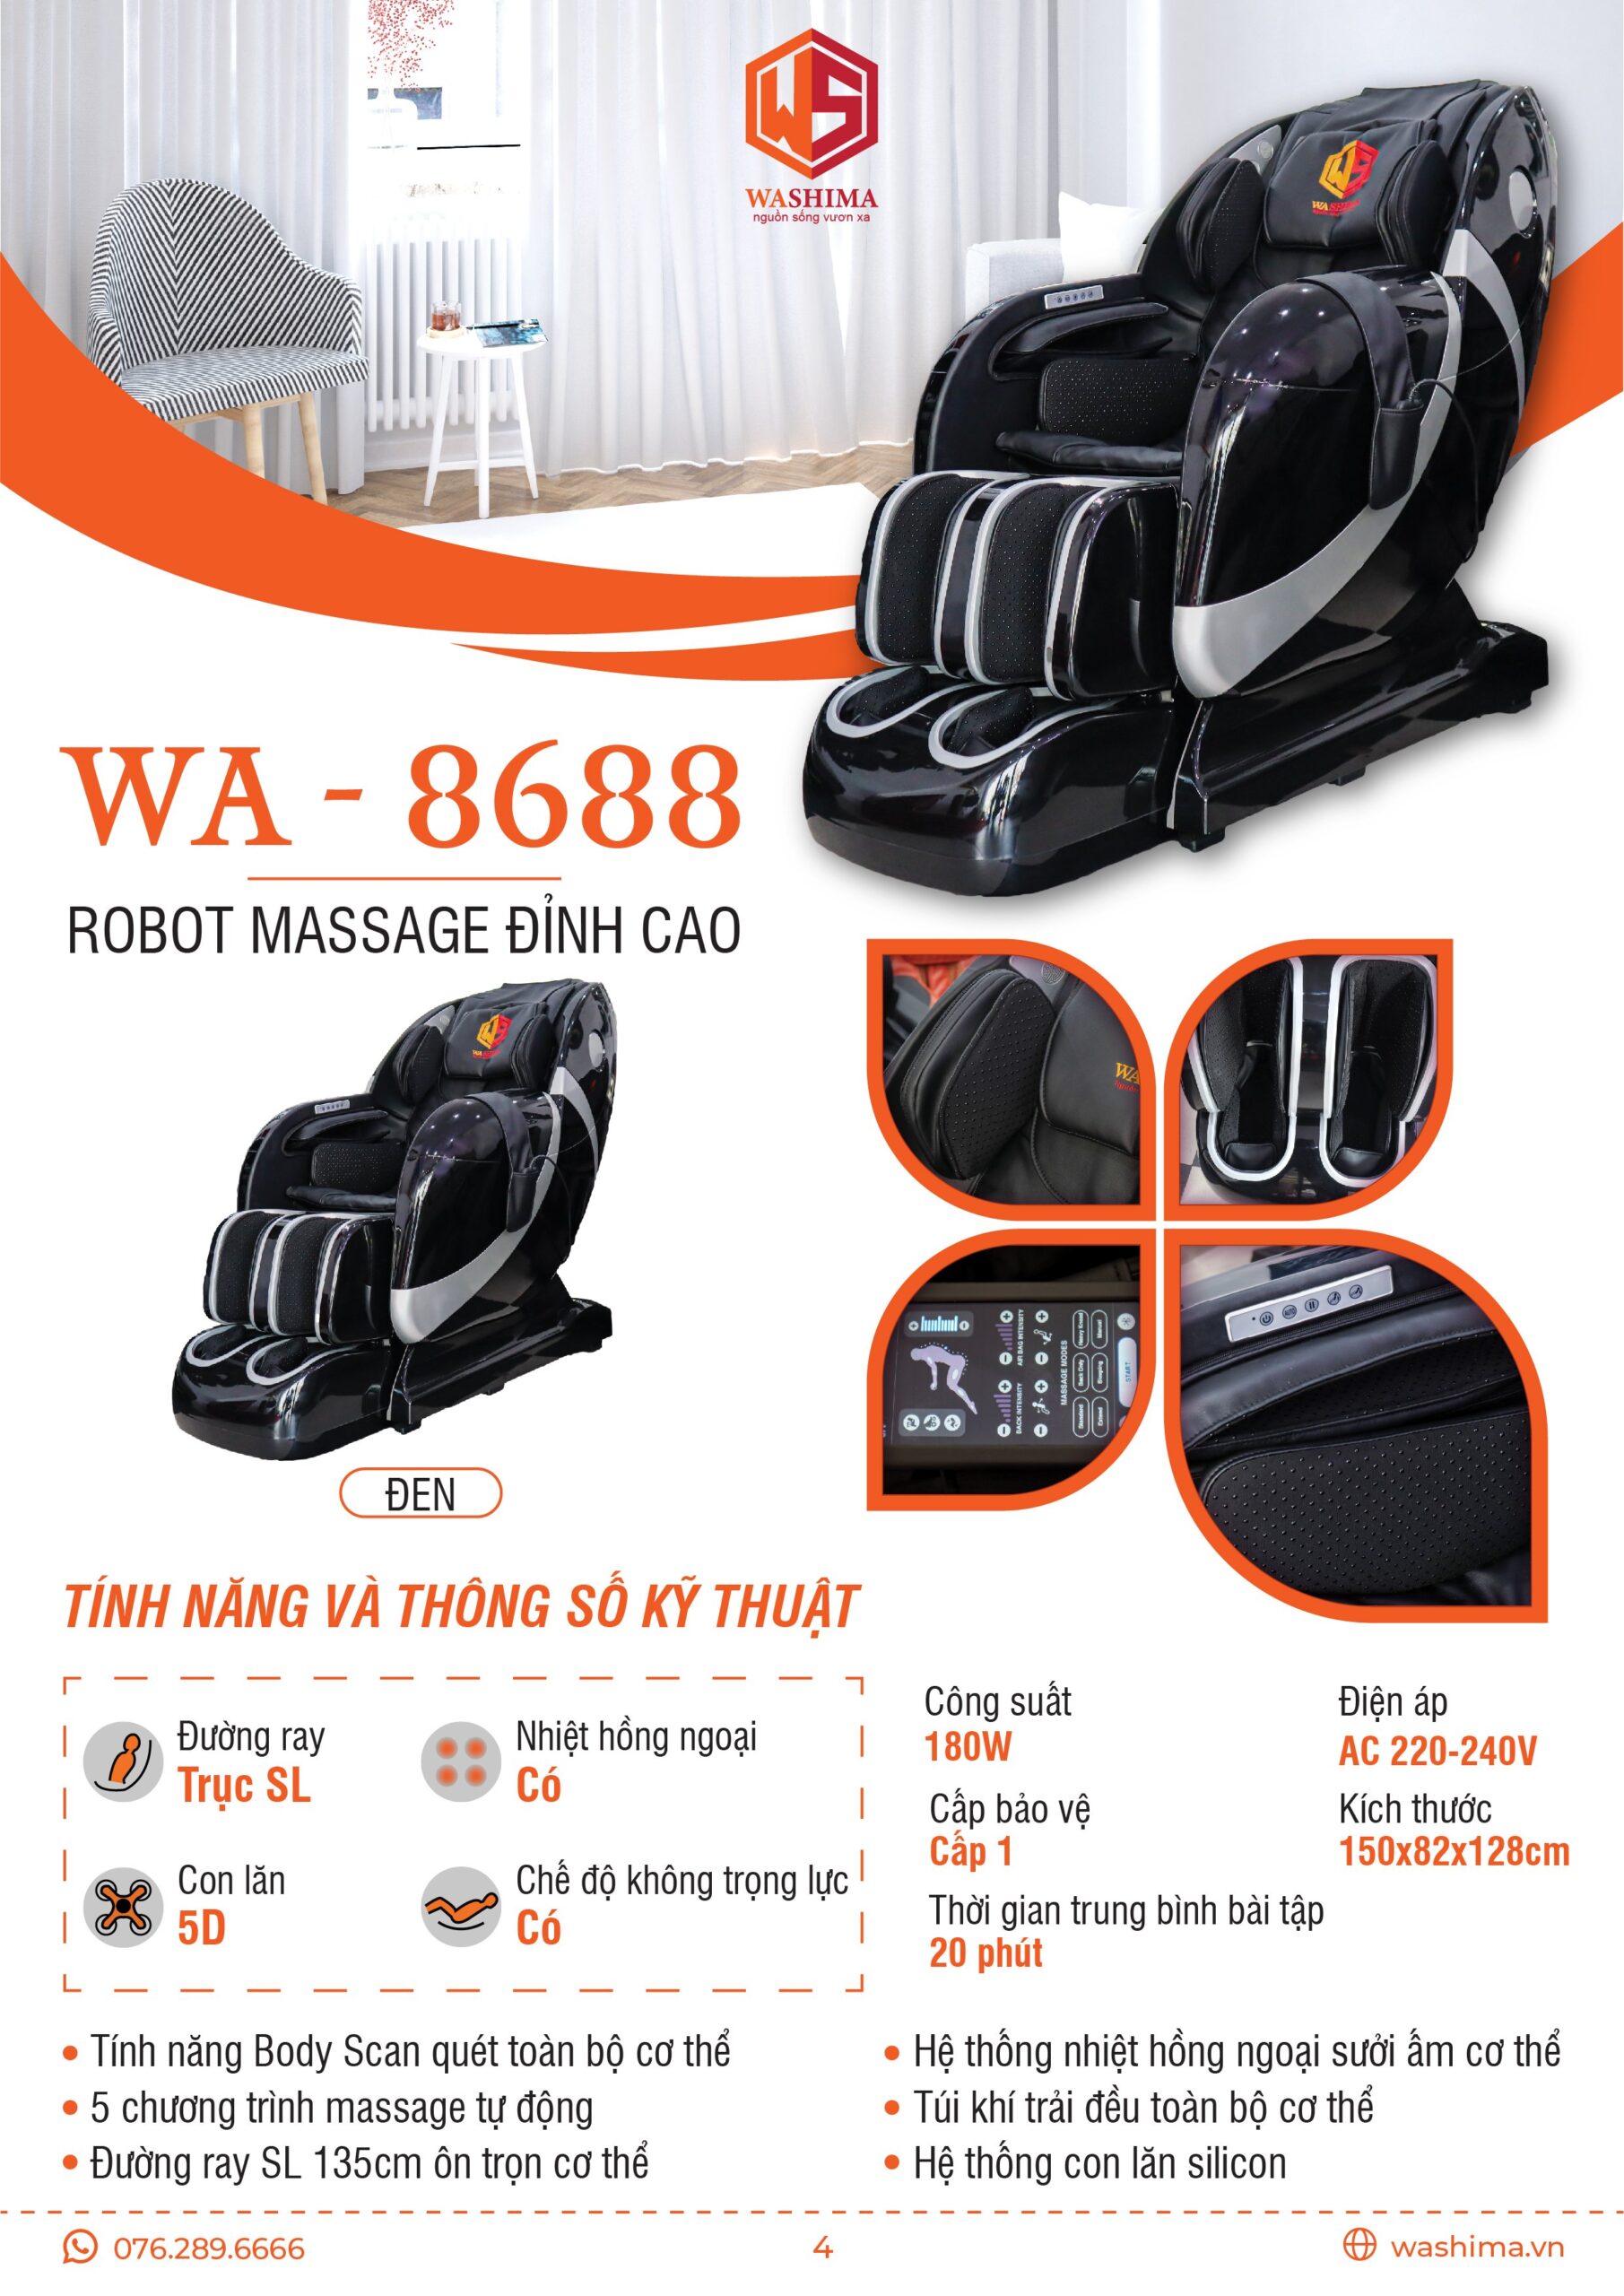 Thông số kỹ thuật của siêu phẩm Robot massage đỉnh cao WA-8688